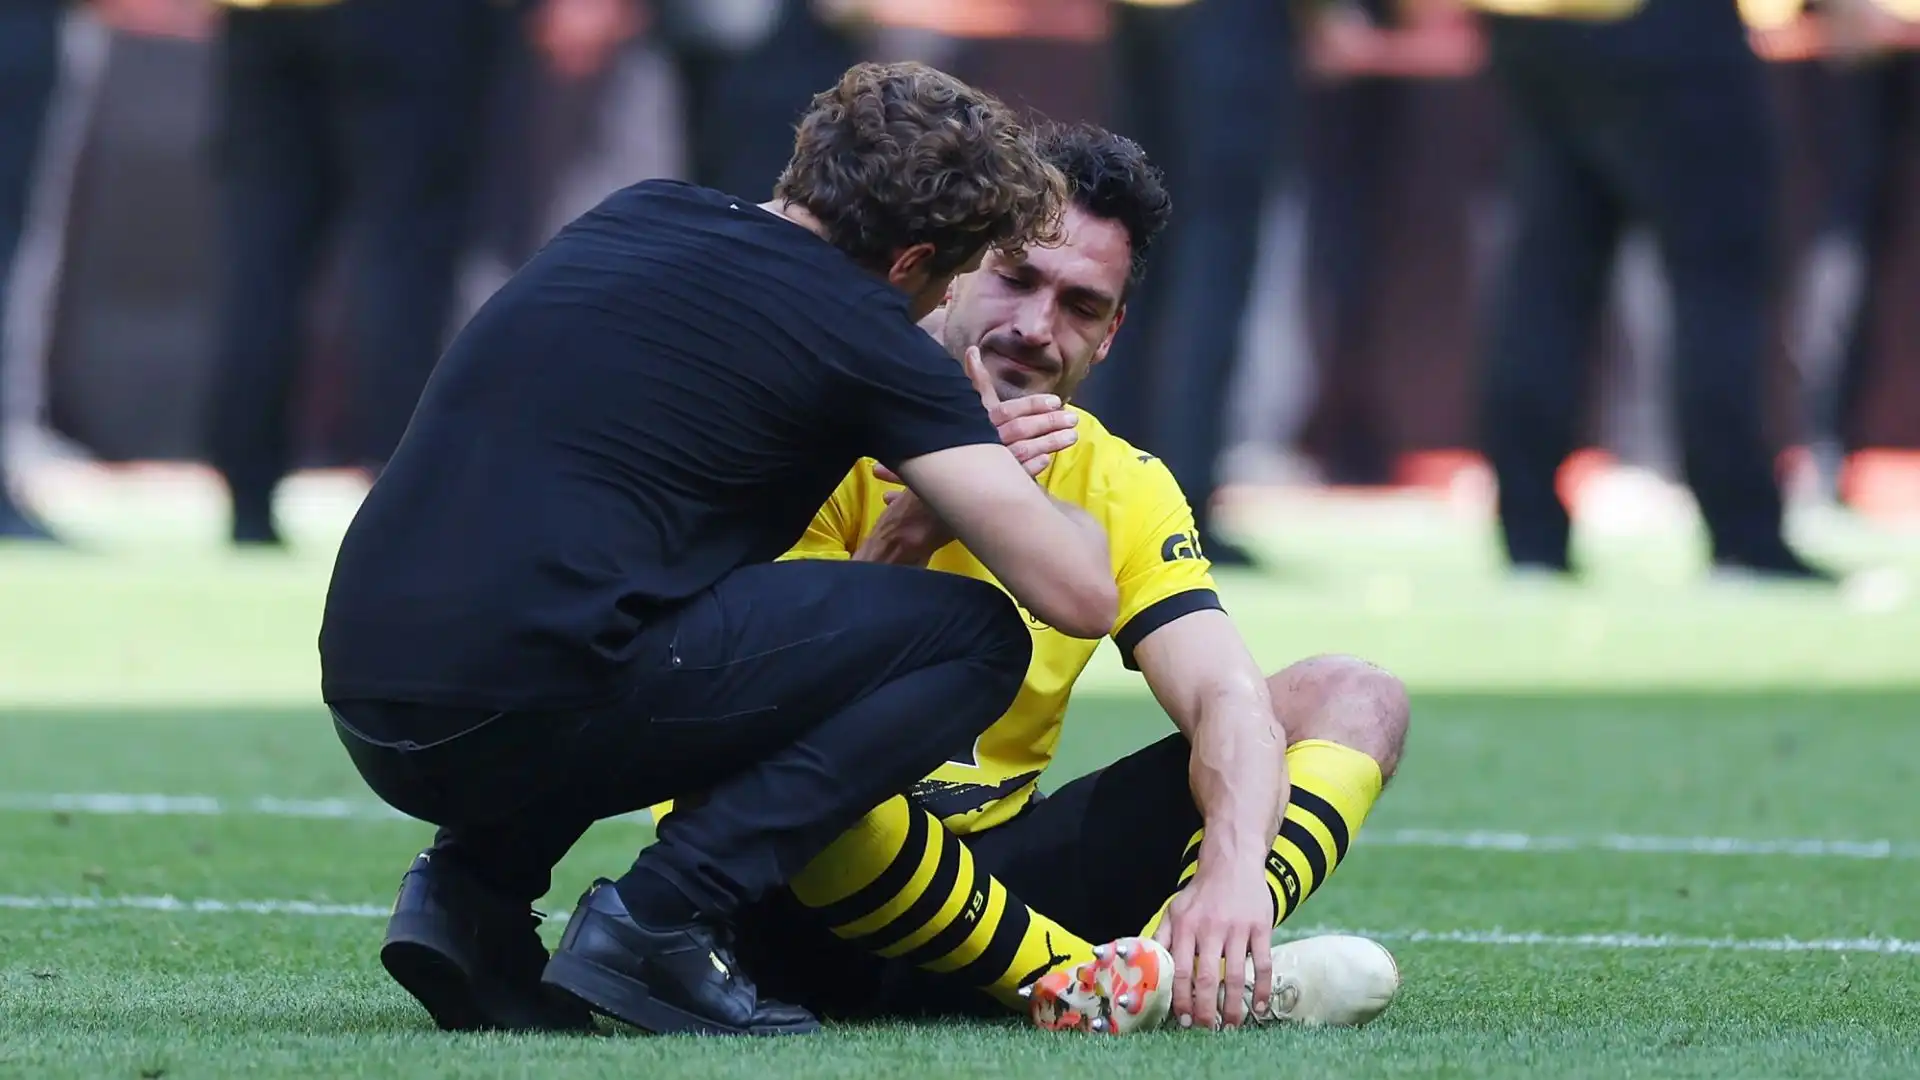 Giocatori del Borussia Dortmund disperati al termine della partita, Hummels a terra